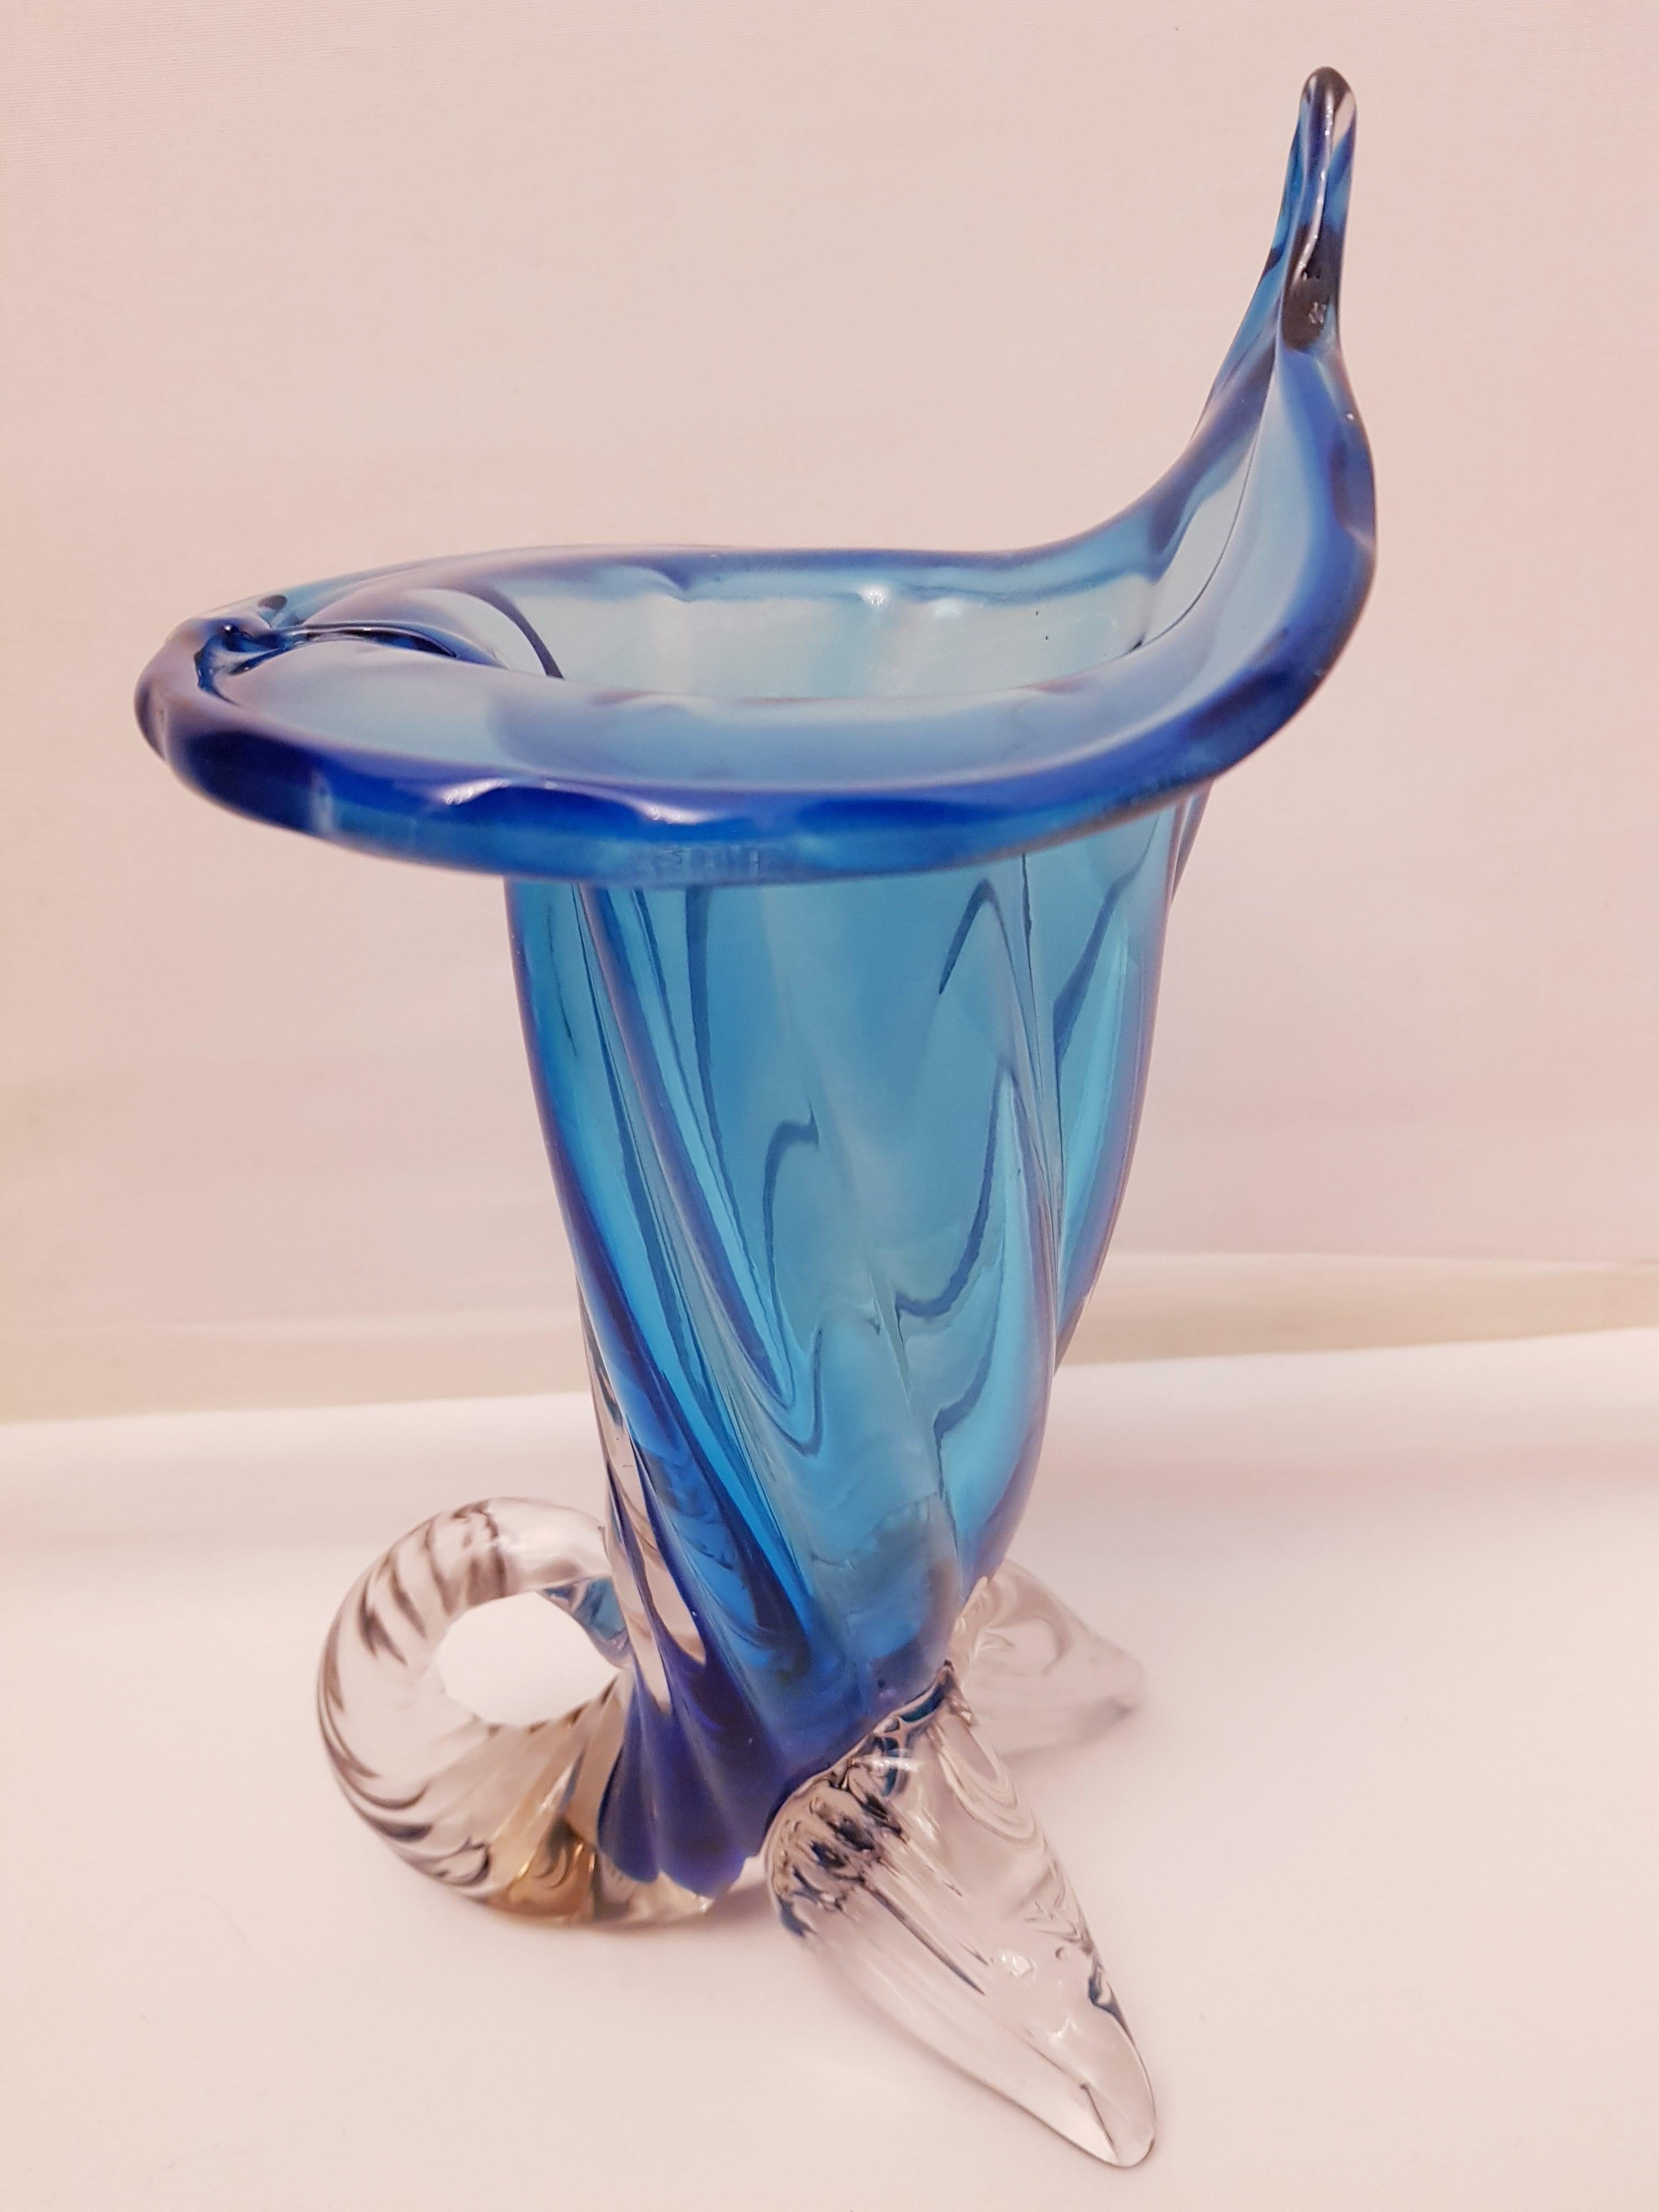 Beautiful vitange murano glass cornucopia vase blue and clear brilliant condition.